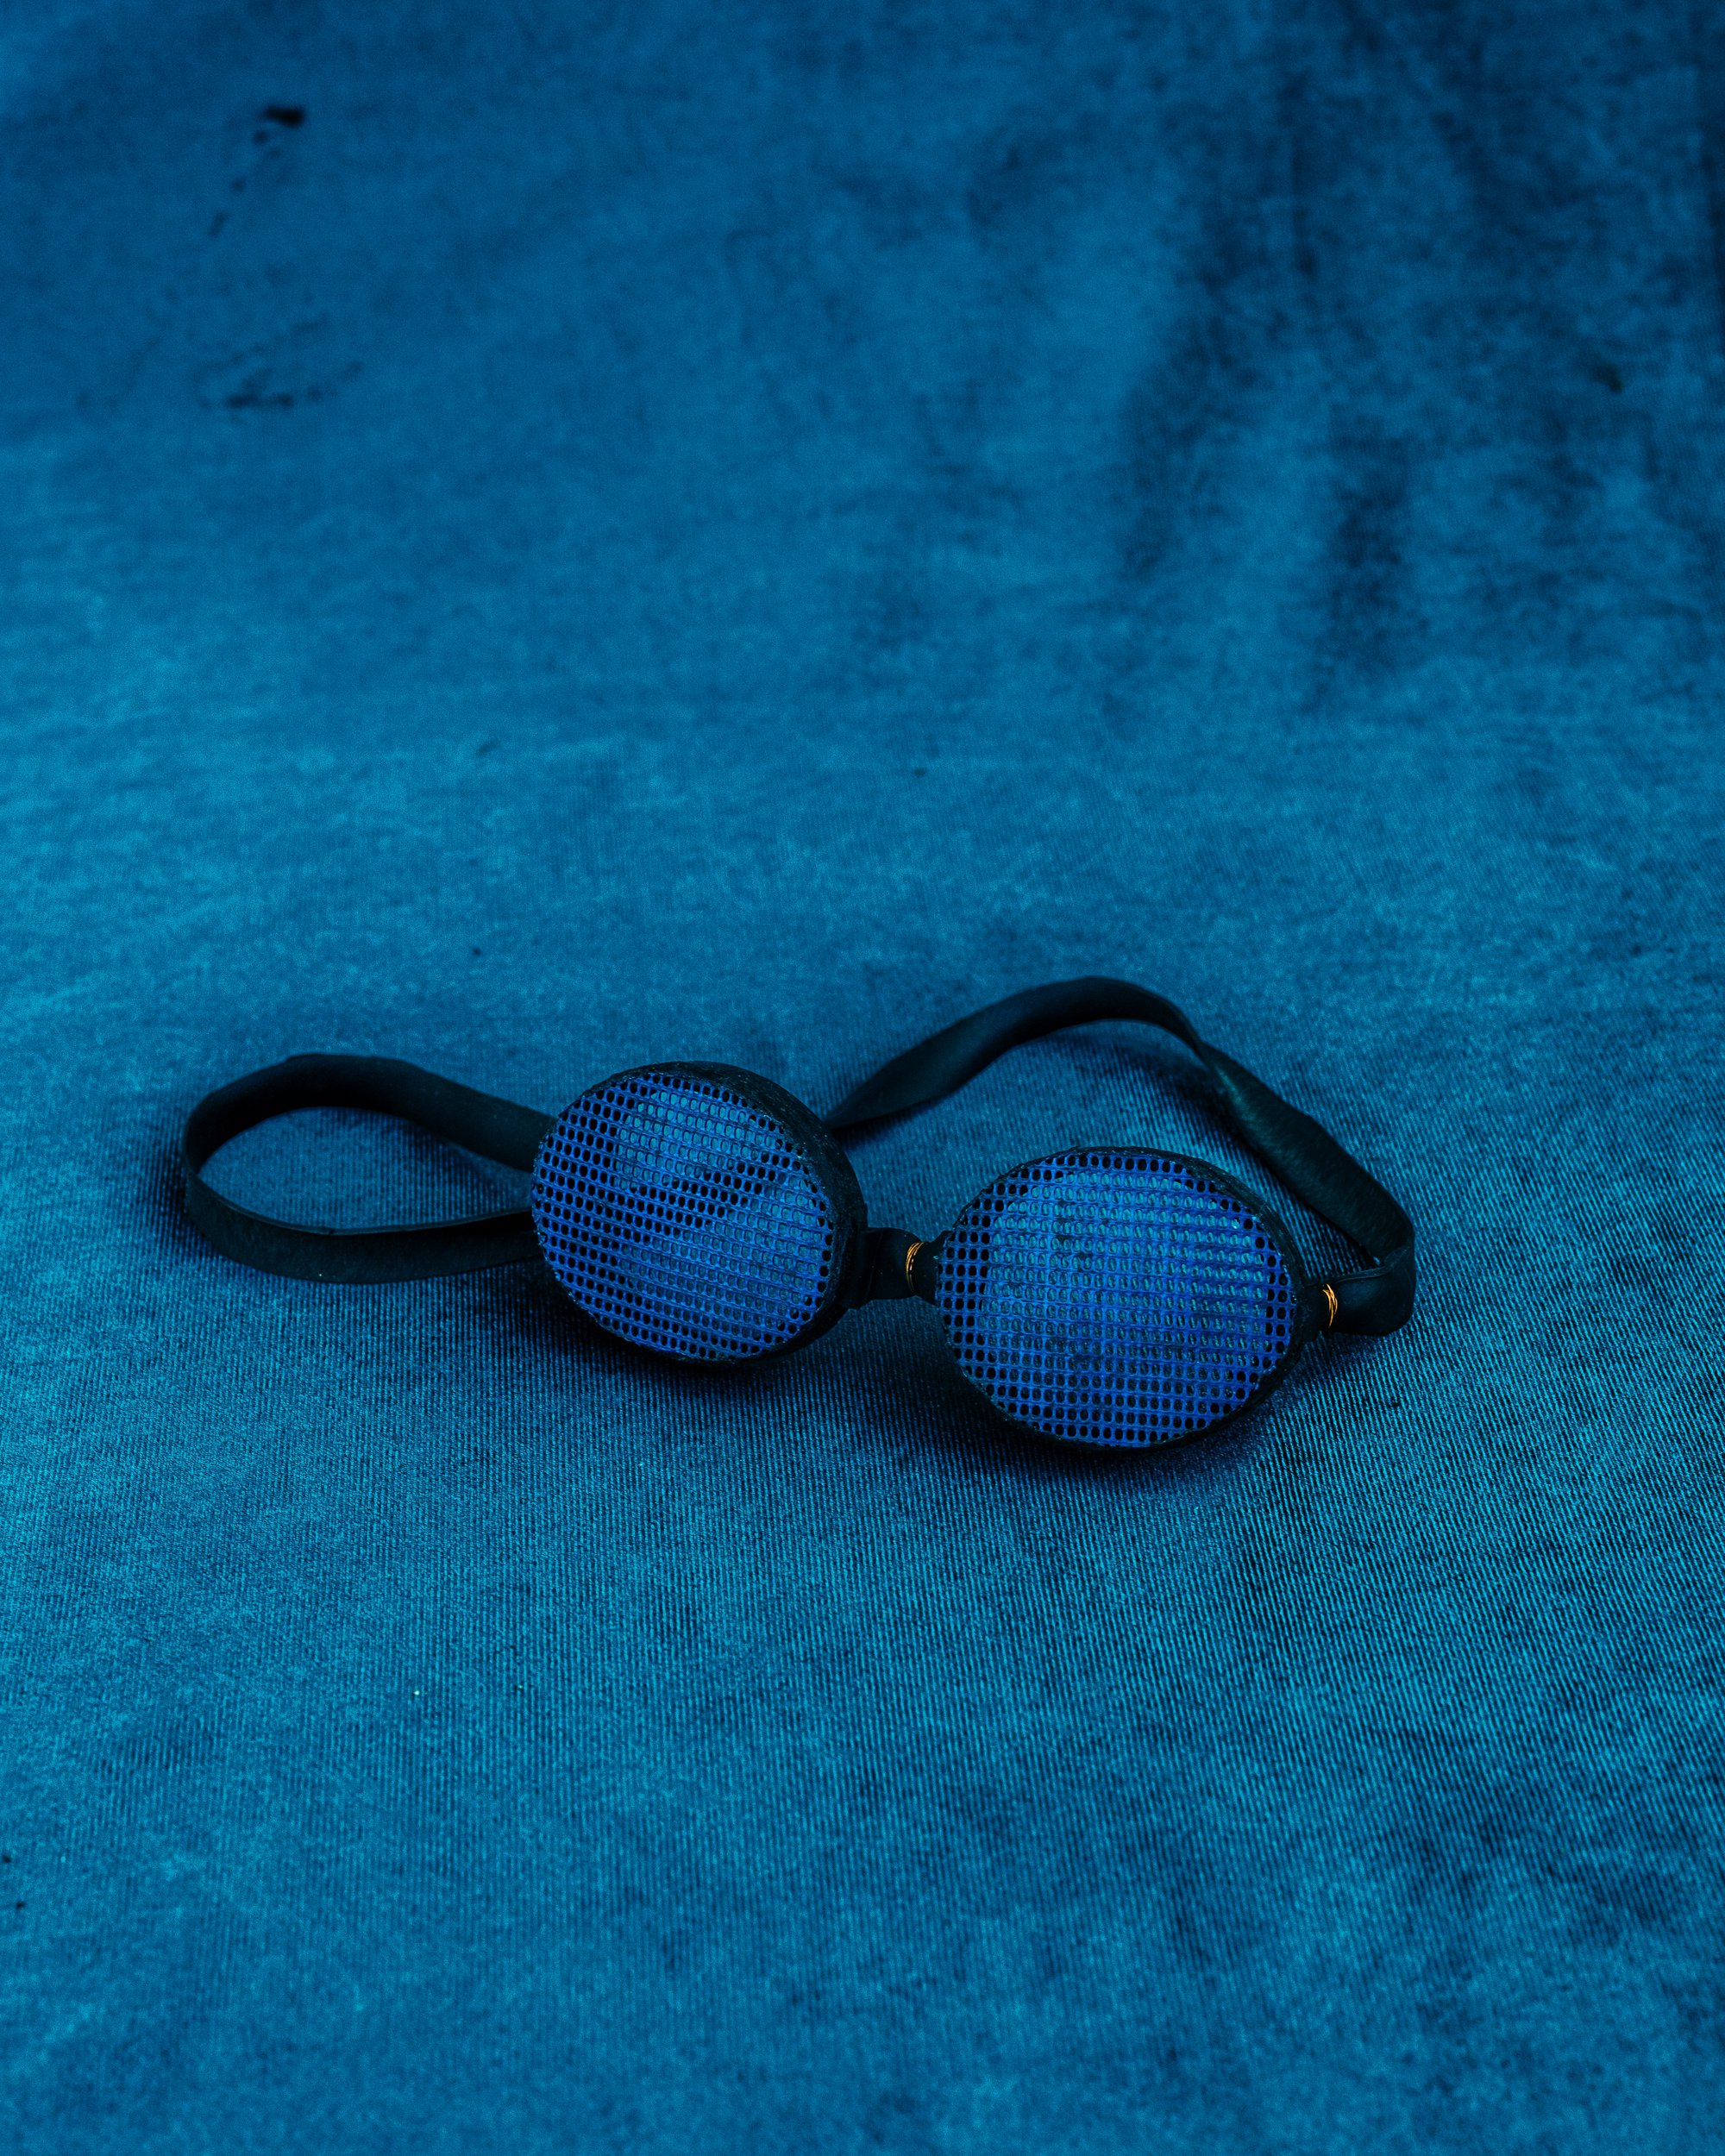 Óculos de britadeira. © Renato Cruz Santos.